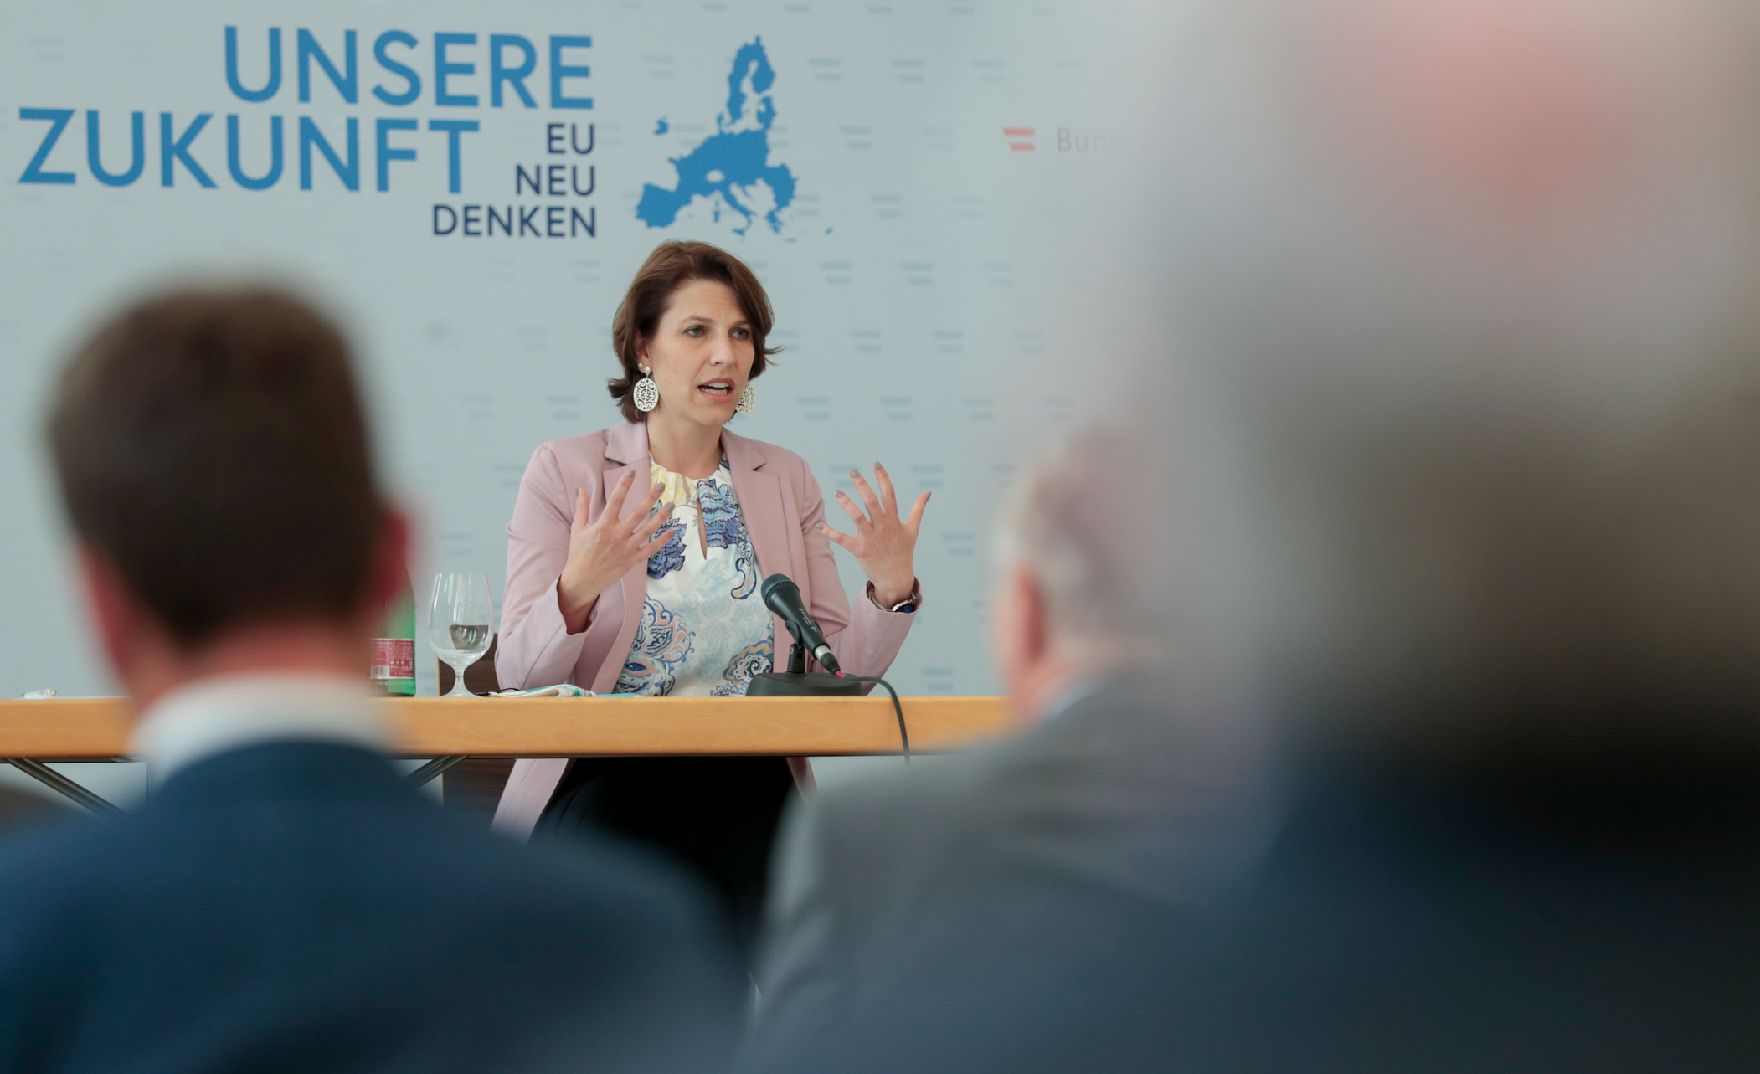 Am 26. Juni 2020 reiste Bundesministerin Karoline Edtstadler (im Bild) anlässlich eines Bundesländertags nach Niederösterreich. Im Bild beim Dialog über die Zukunft der EU mit EU-Gemeinderäten.